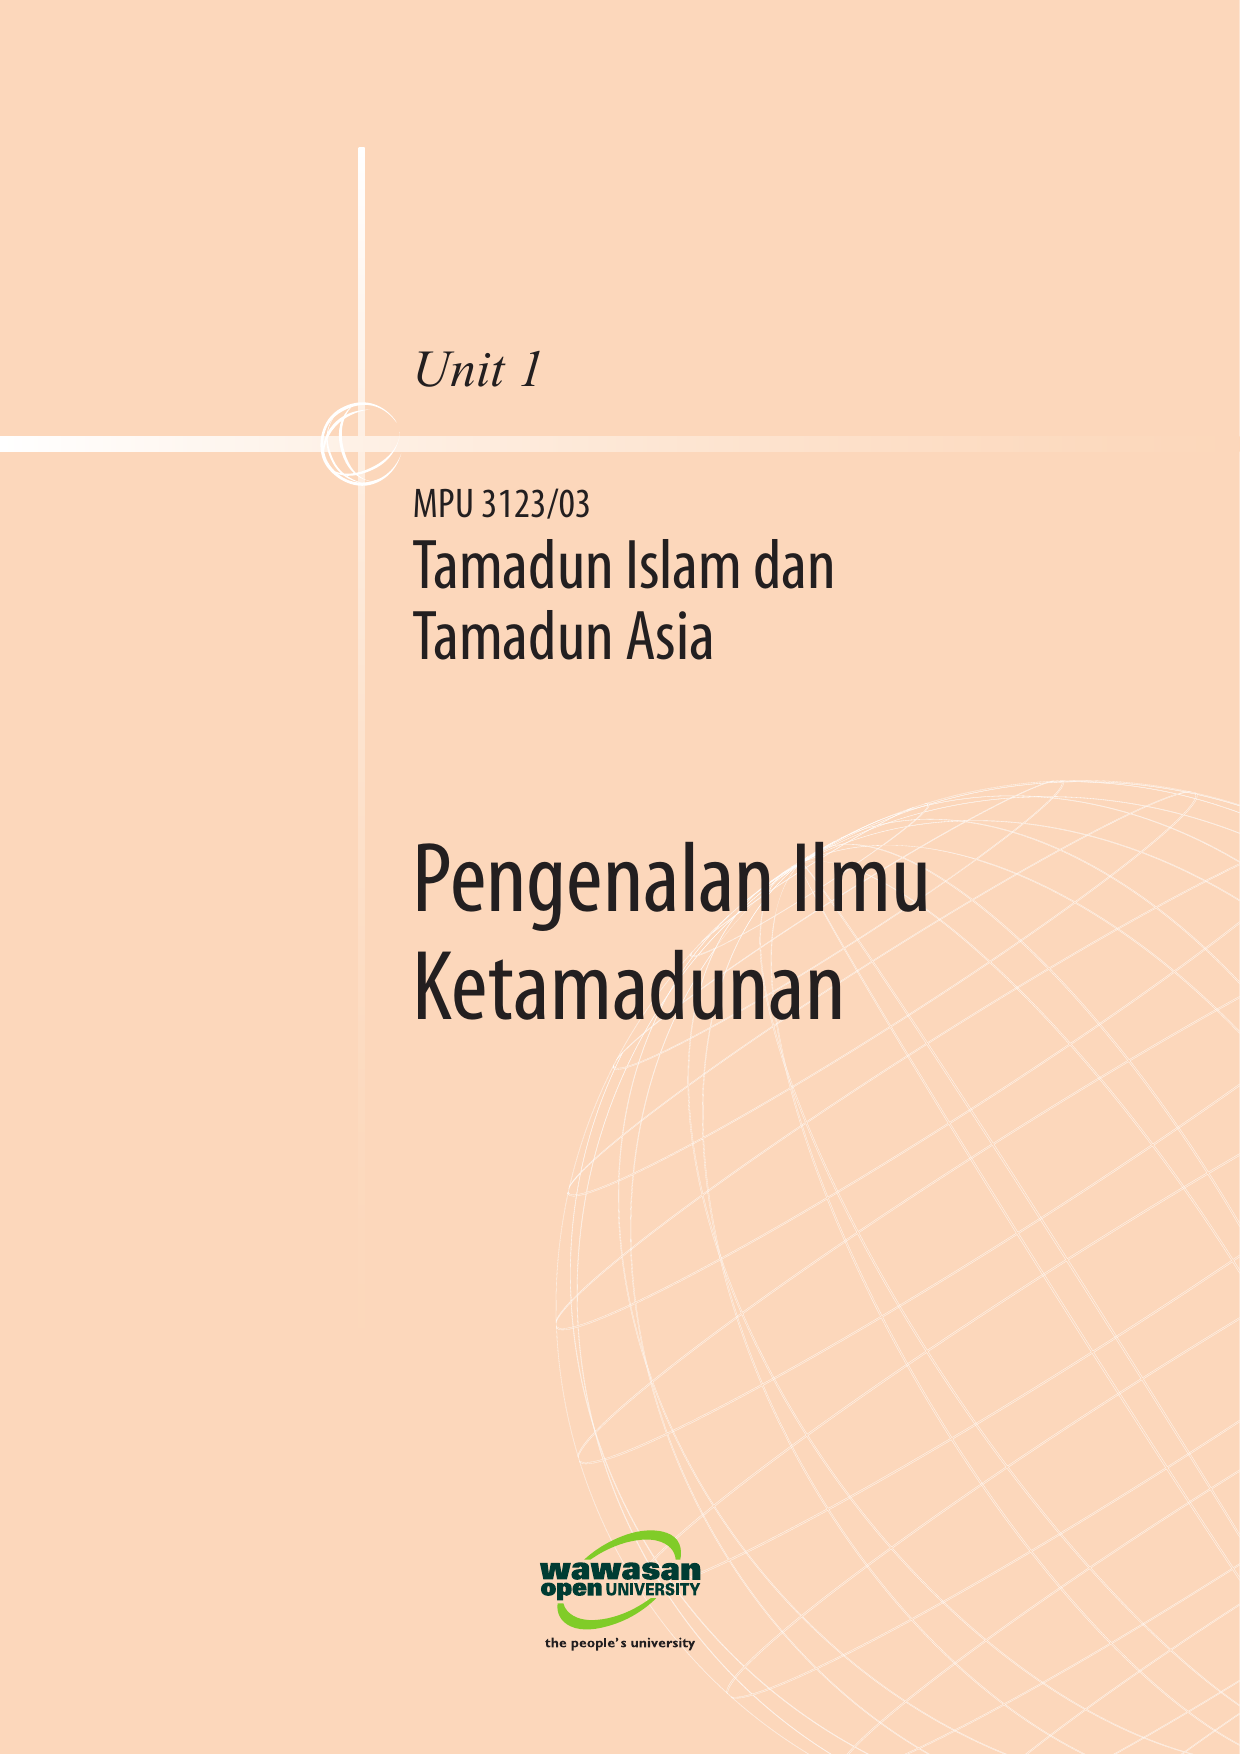 Tamadun Islam Tamadun Asia U1